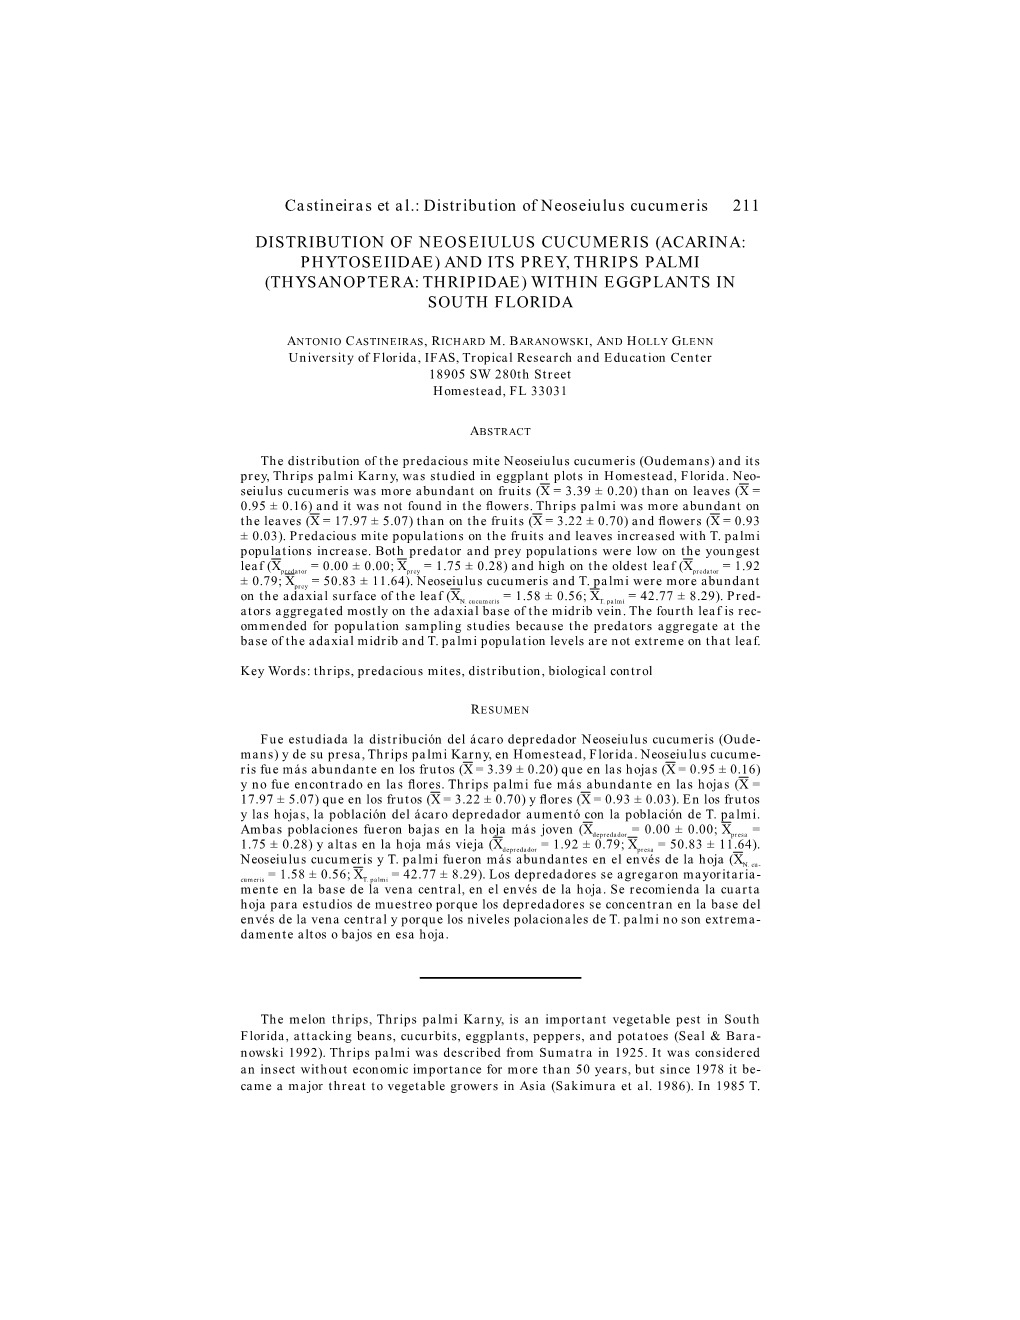 Castineiras Et Al.: Distribution of Neoseiulus Cucumeris 211